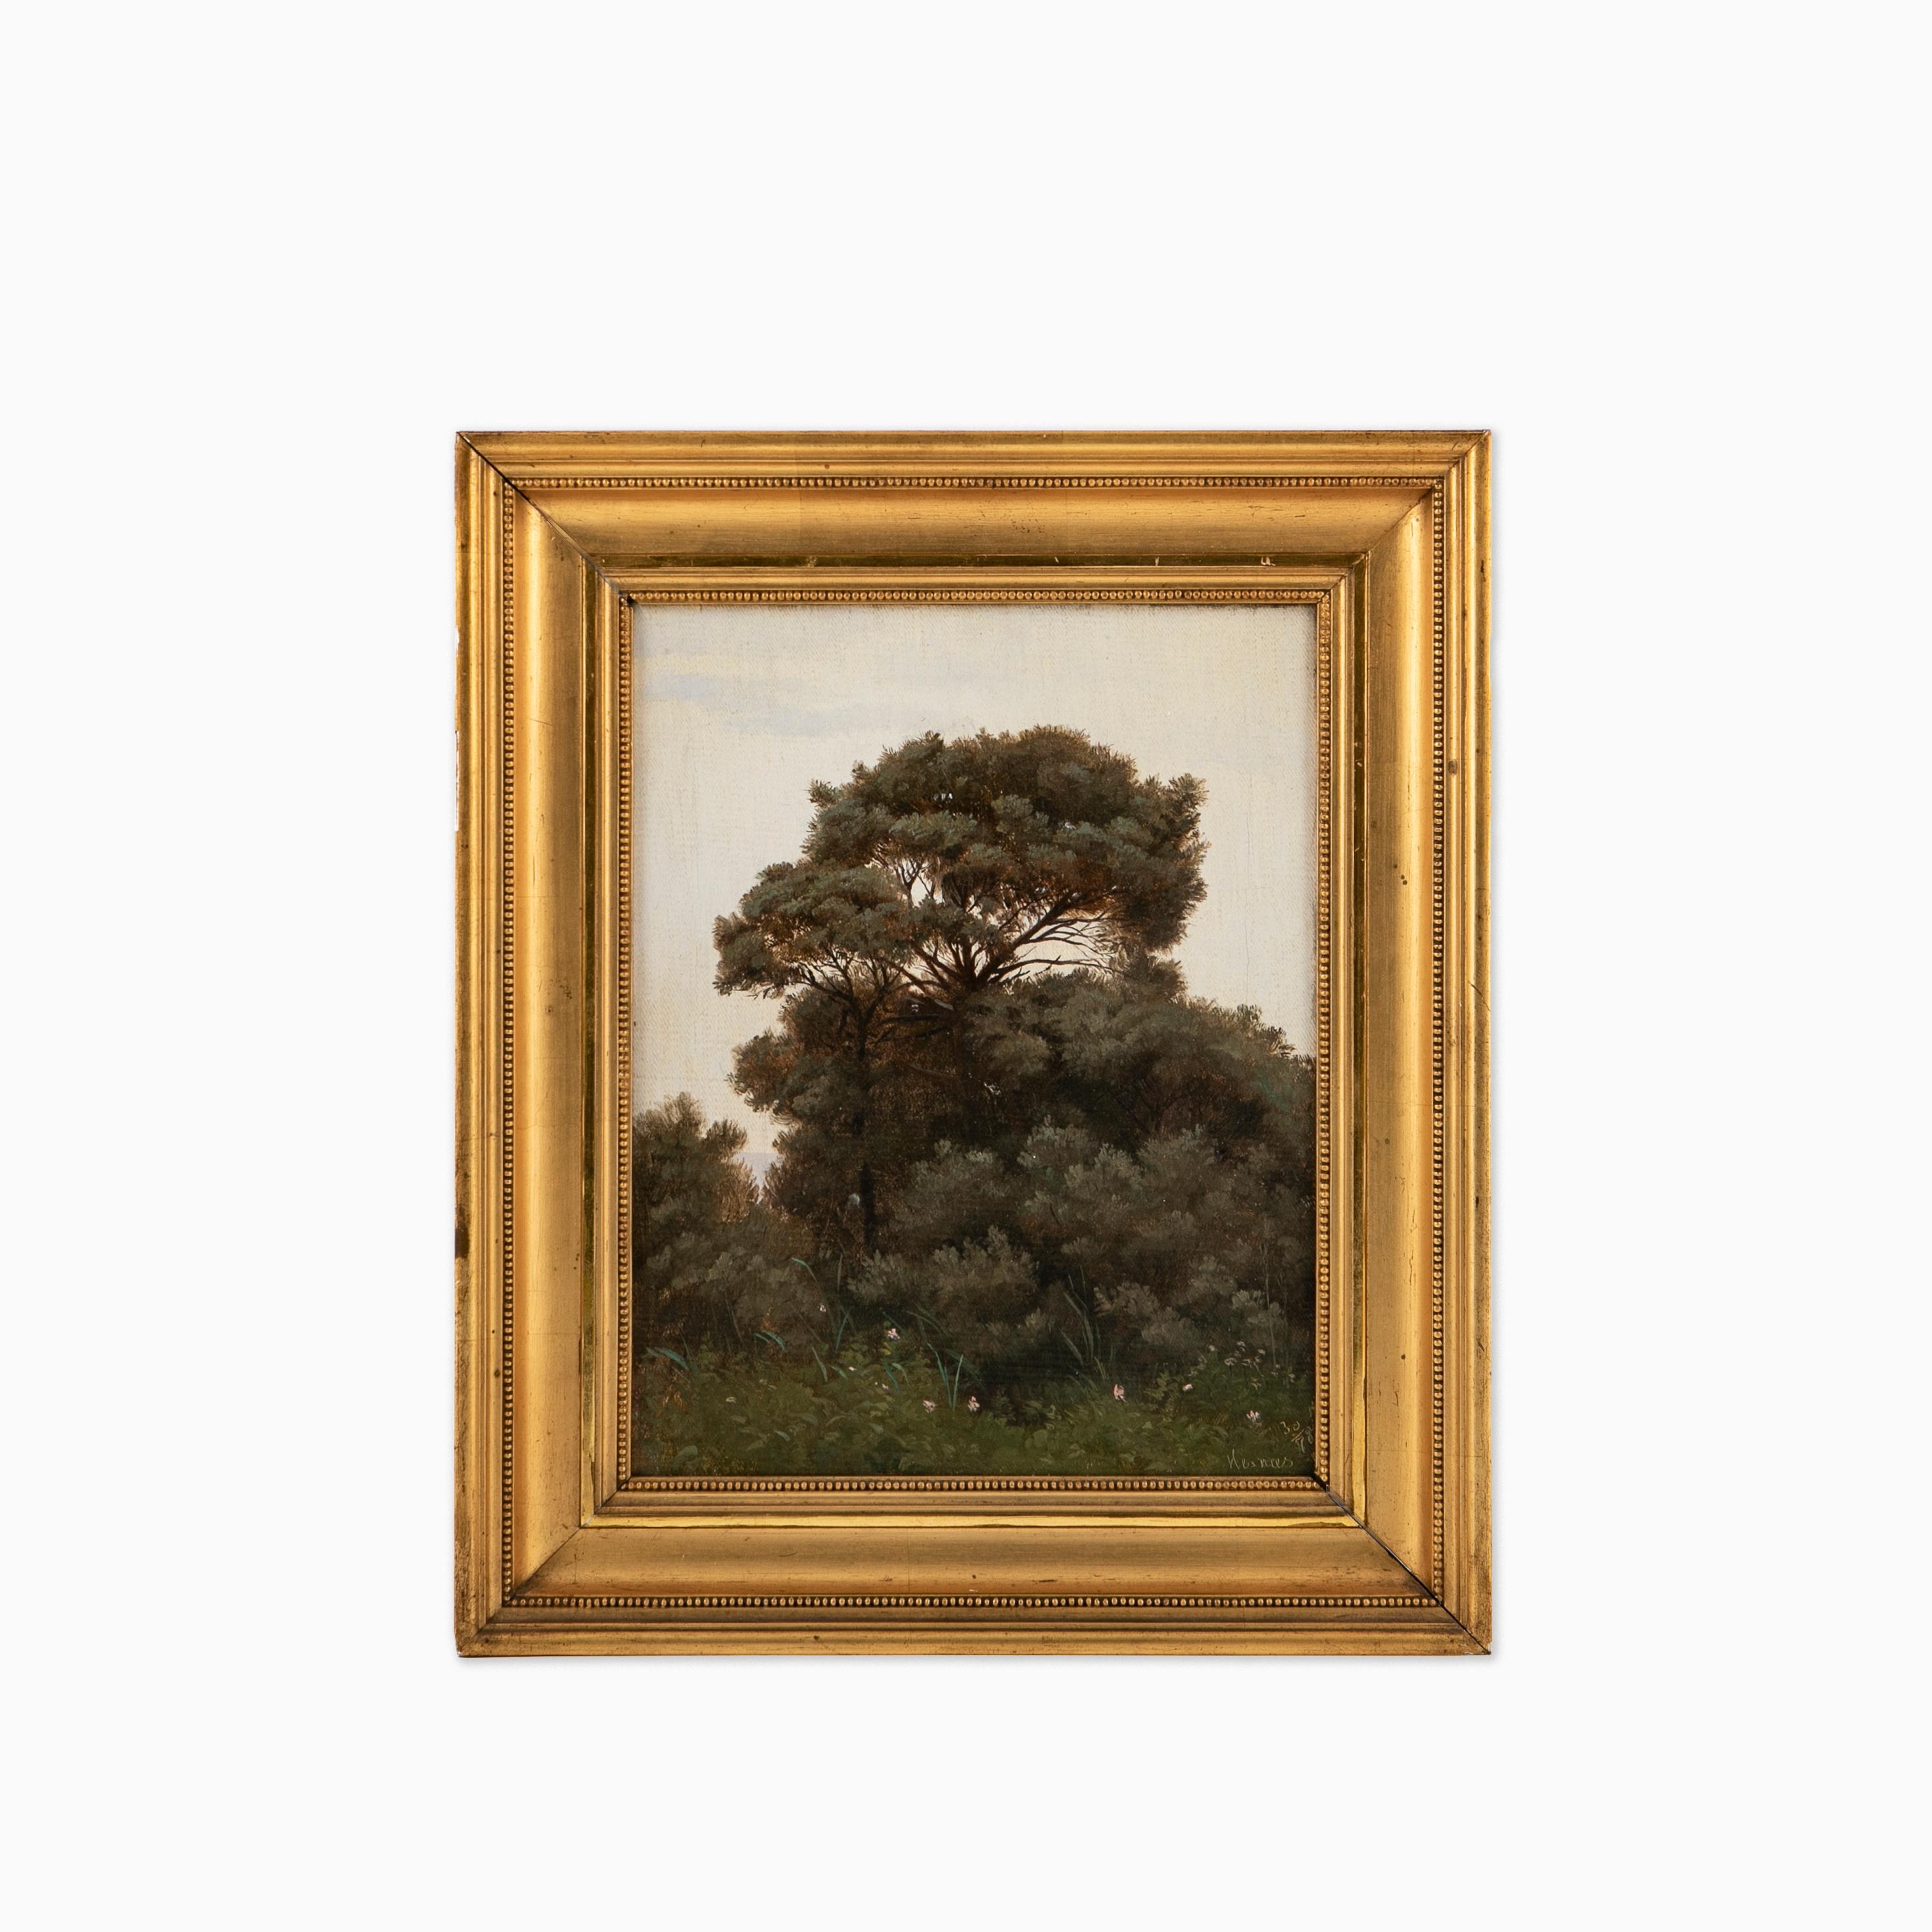 Fritz Thomsen (1819-1891), peintre danois.
Peinture d'une scène forestière près du rivage de Hesnæs, sur l'île danoise de Falster, 1878.

Huile sur toile, encadrée.

Dimensions de l'œuvre : 25 x 19 cm.
Dimensions du cadre : 34 x 28,5 x 4,5 cm.